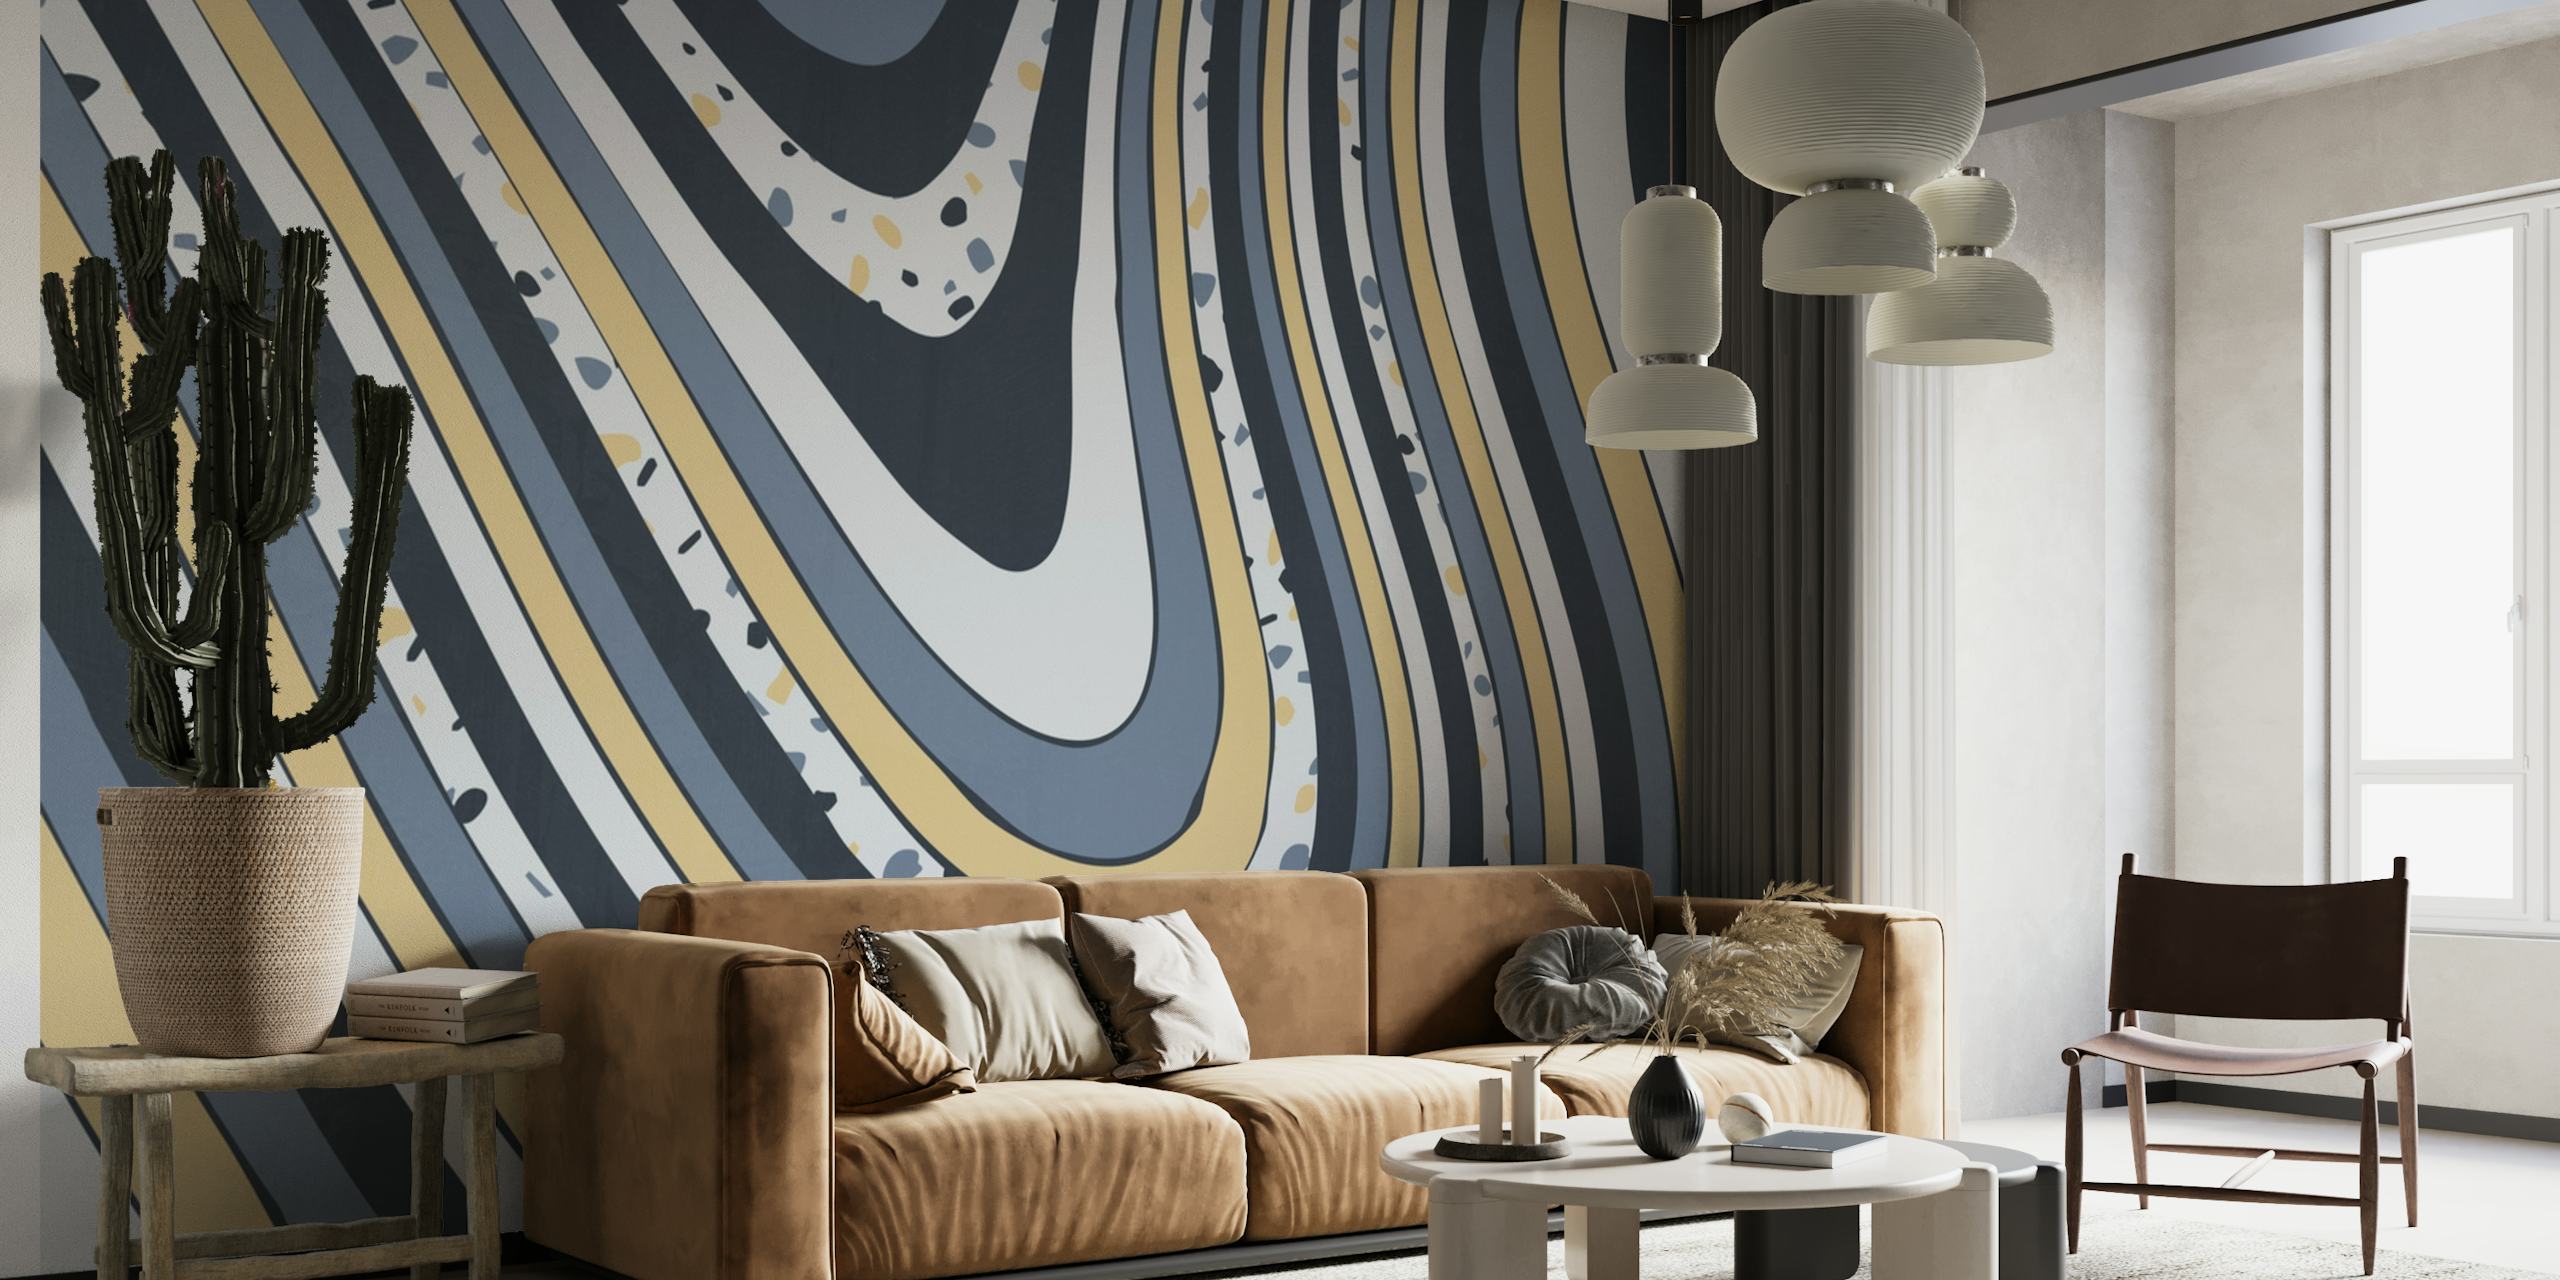 Abstract Organic XIV seinämaalaus, jossa on pyöriviä viivoja harmaan, kerman, kullan ja mustana